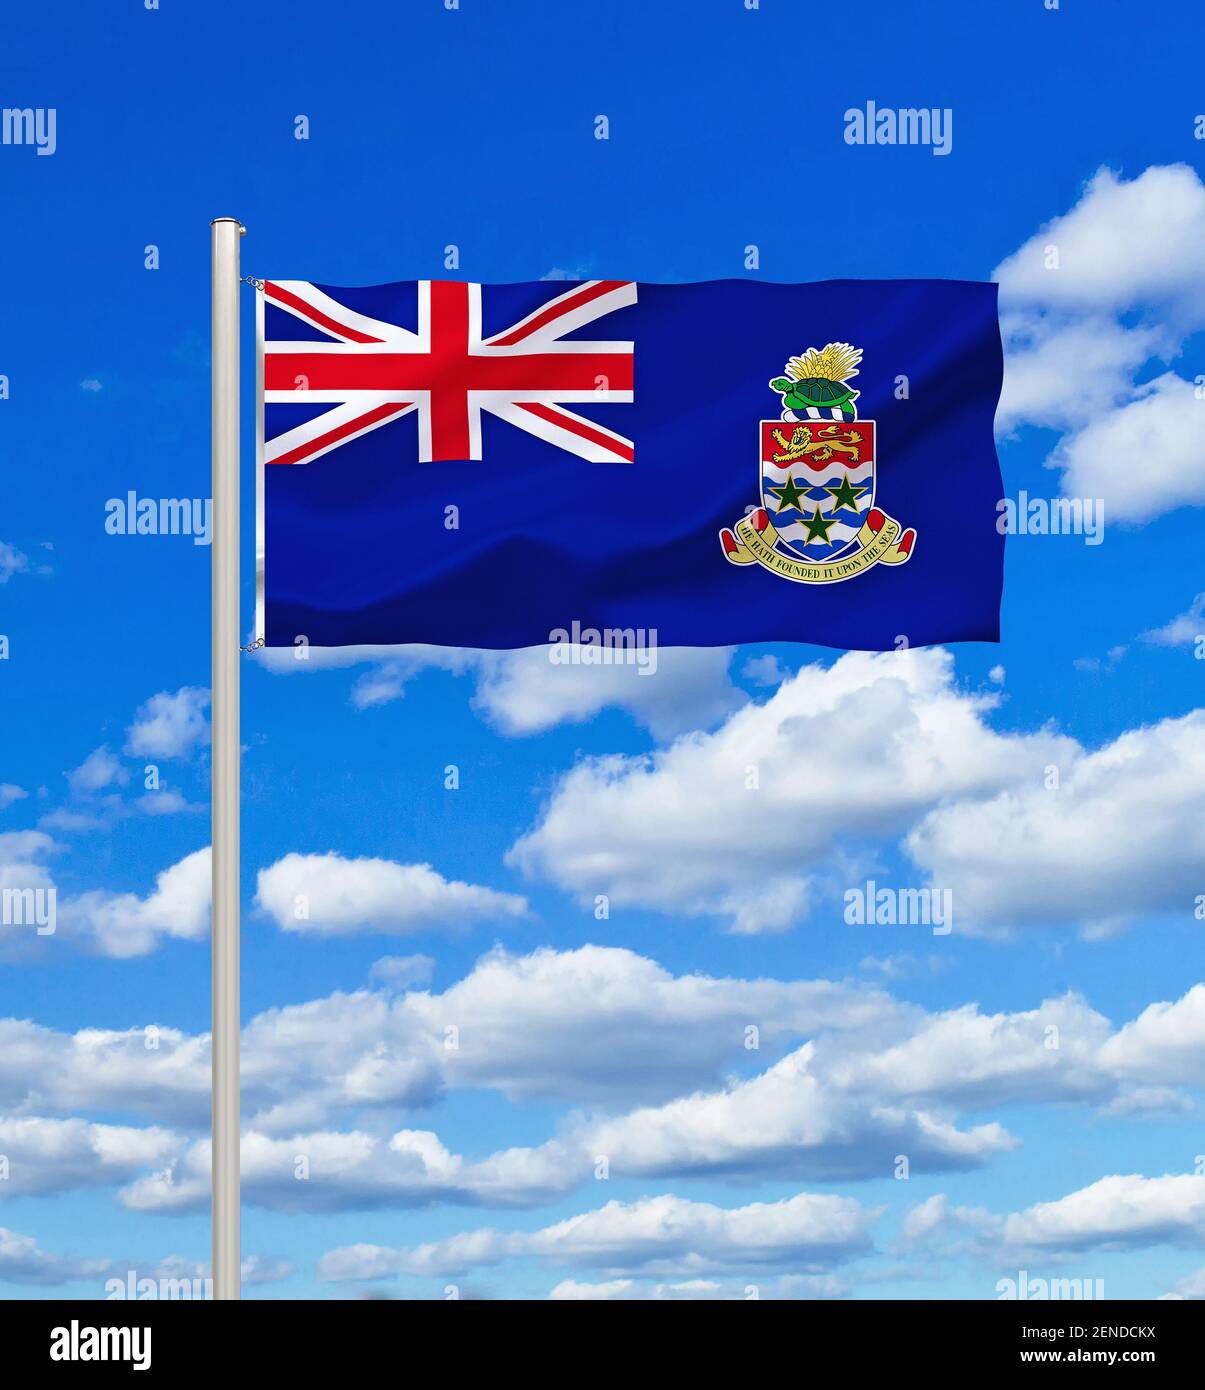 Die Flagge von den Cayman Islands, Kaimaninseln, Britische Überseegebiete, Karibik, Stock Photo